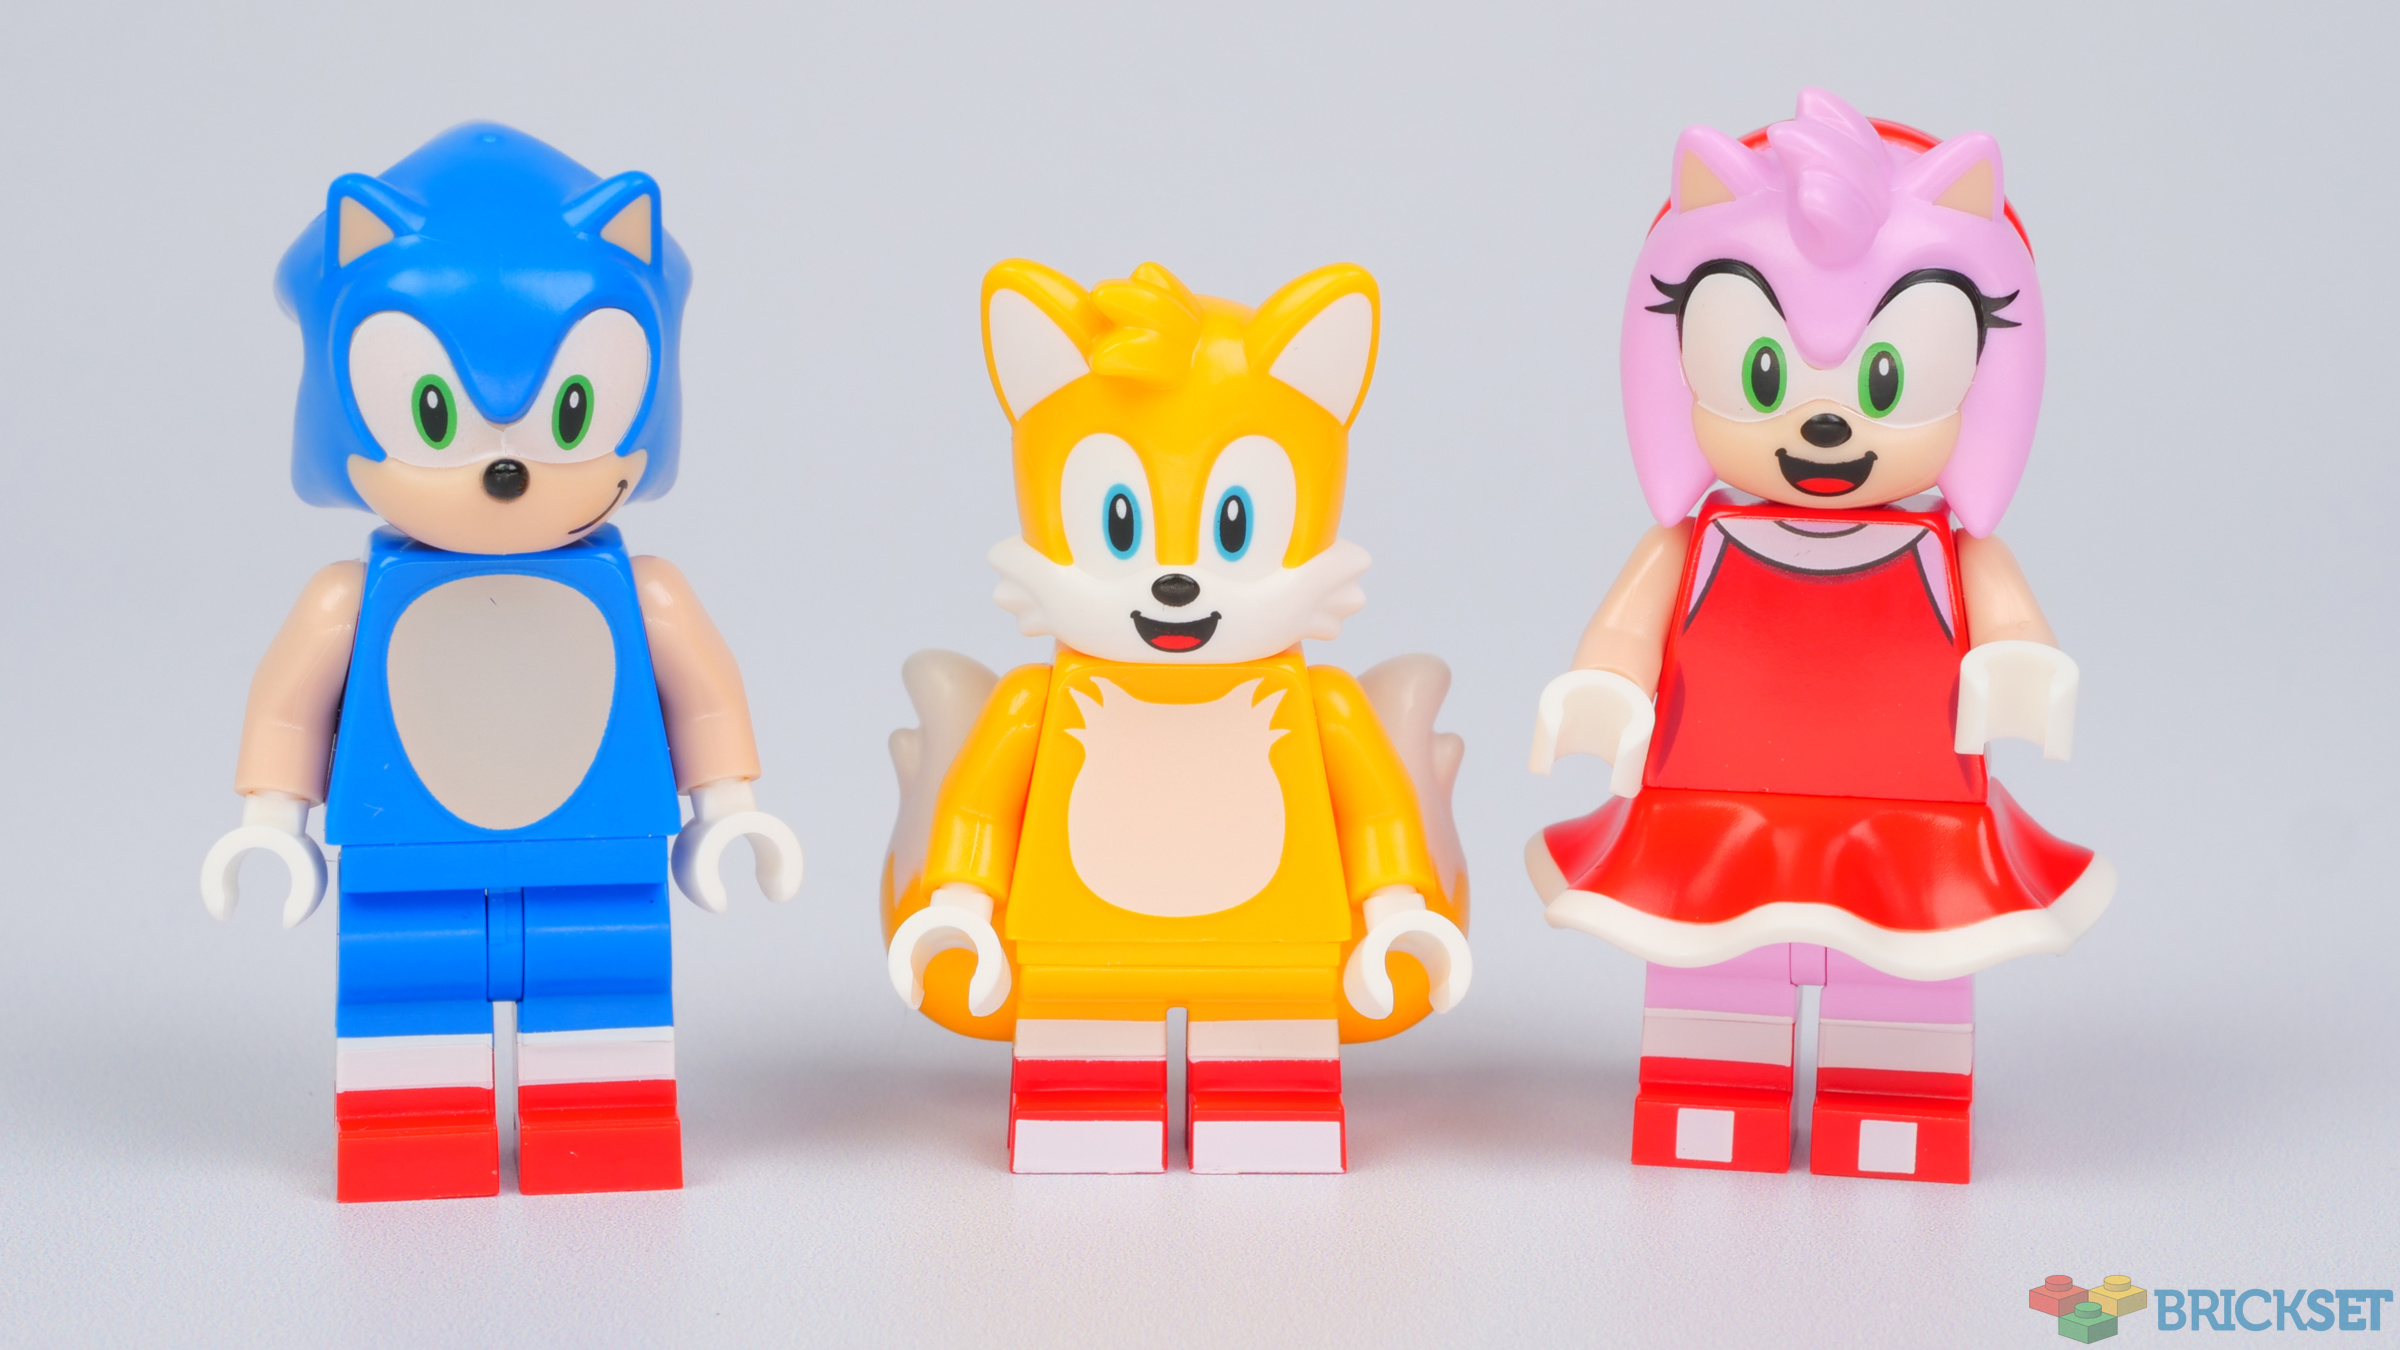 Sonic the Hedgehog Lego Set Review